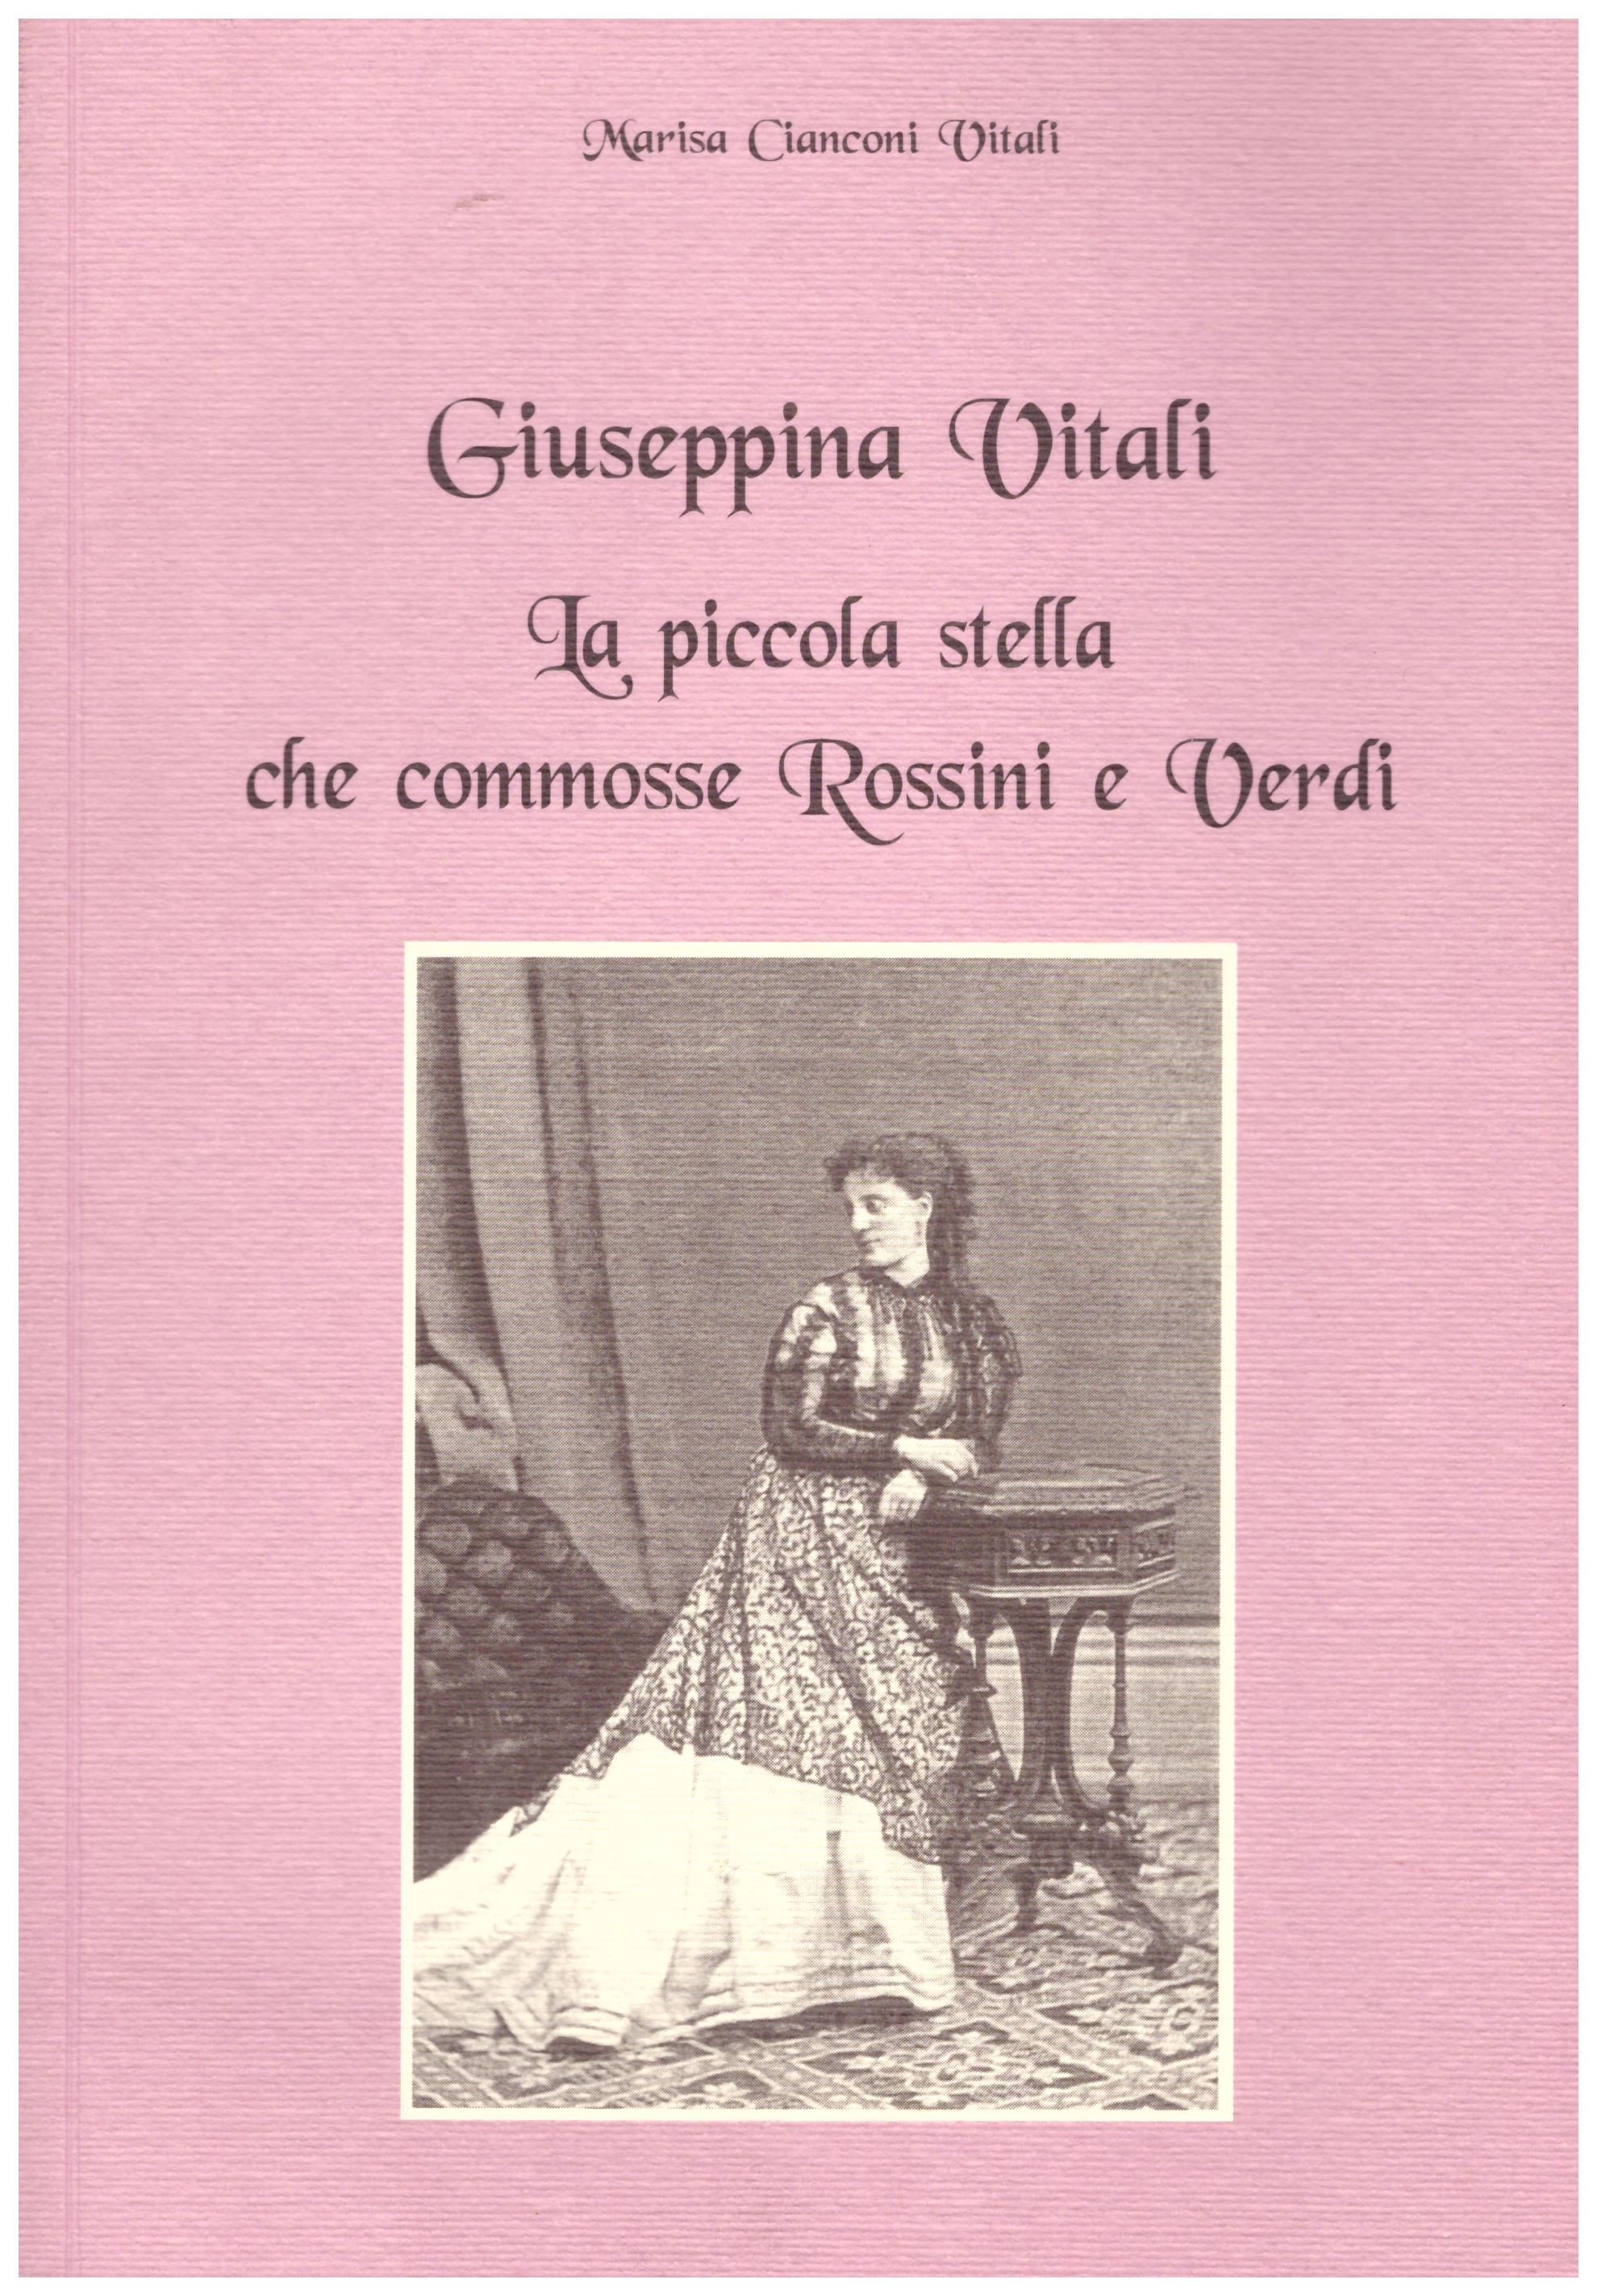 Giuseppina Vitali, la piccola stella che commosse Rossini e Verdi